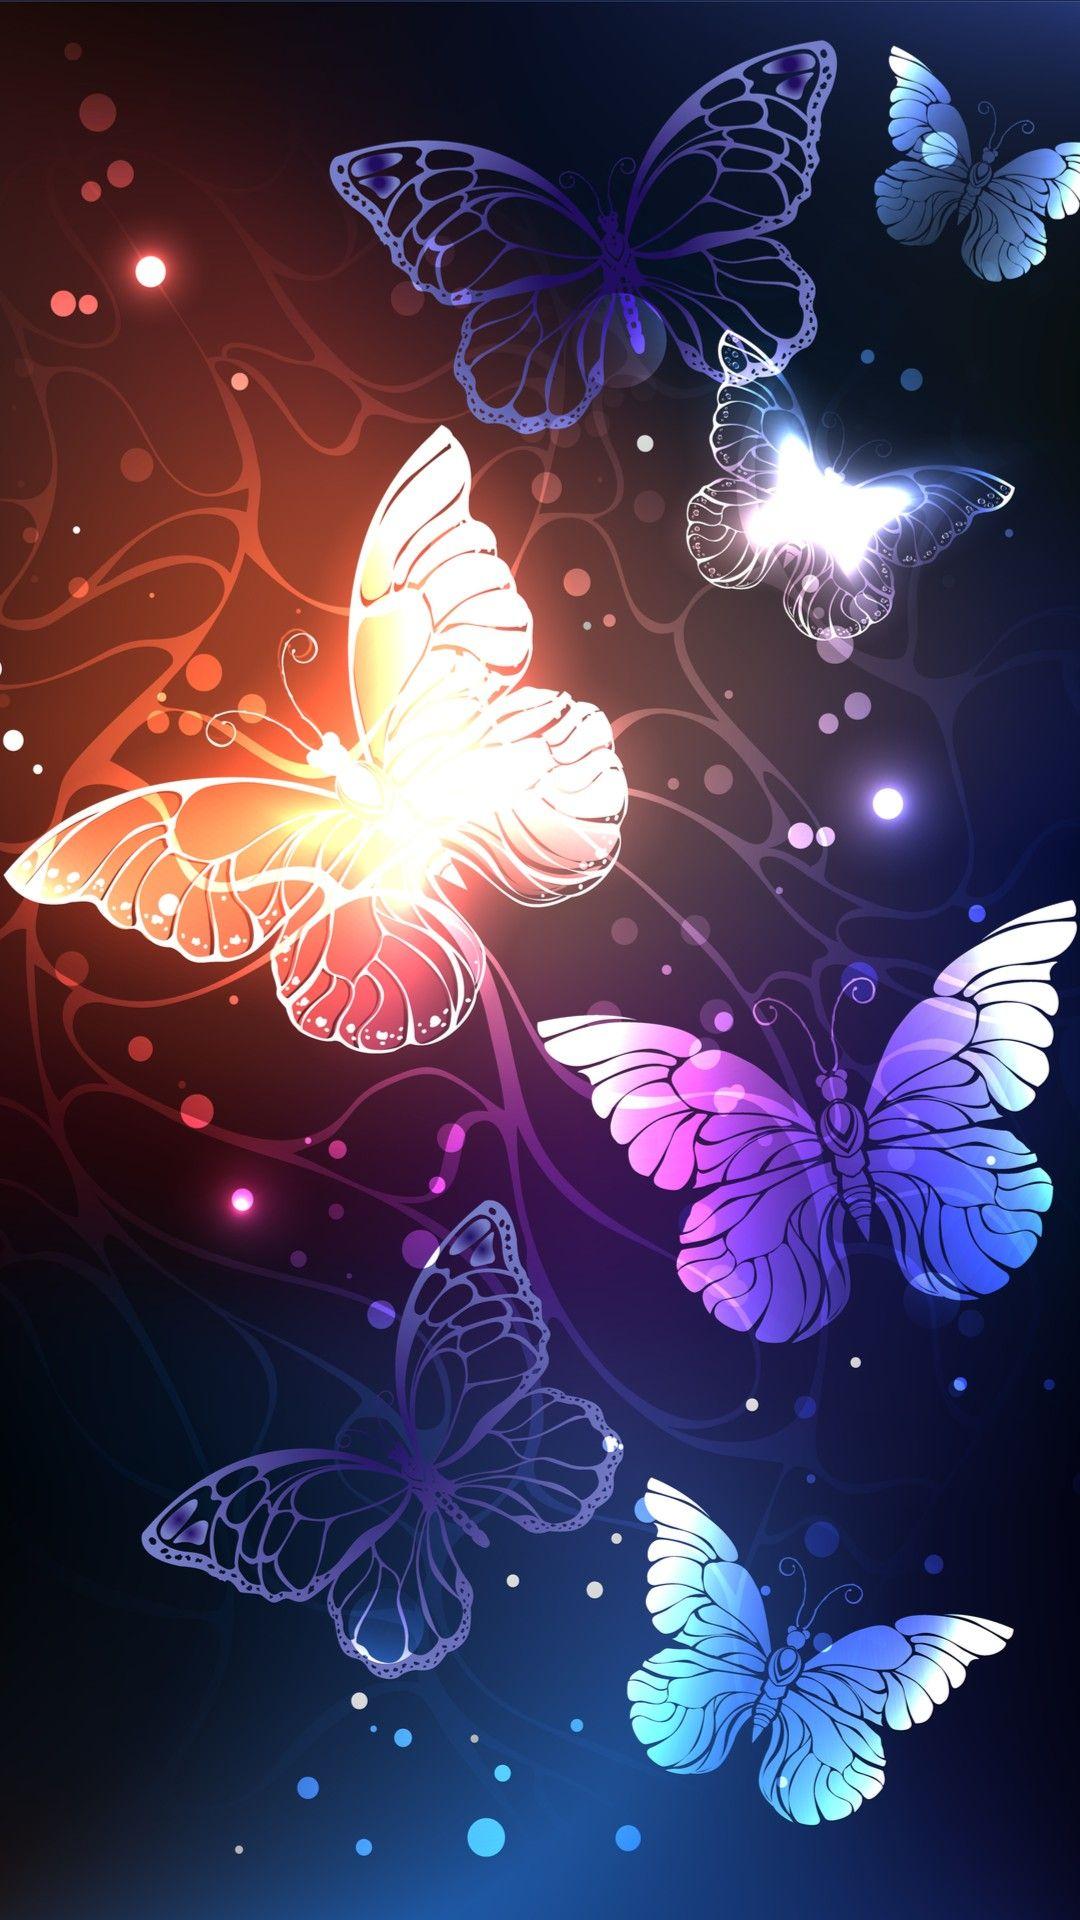 Butterflies Wallpaper.By Artist Unknown. Butterfly